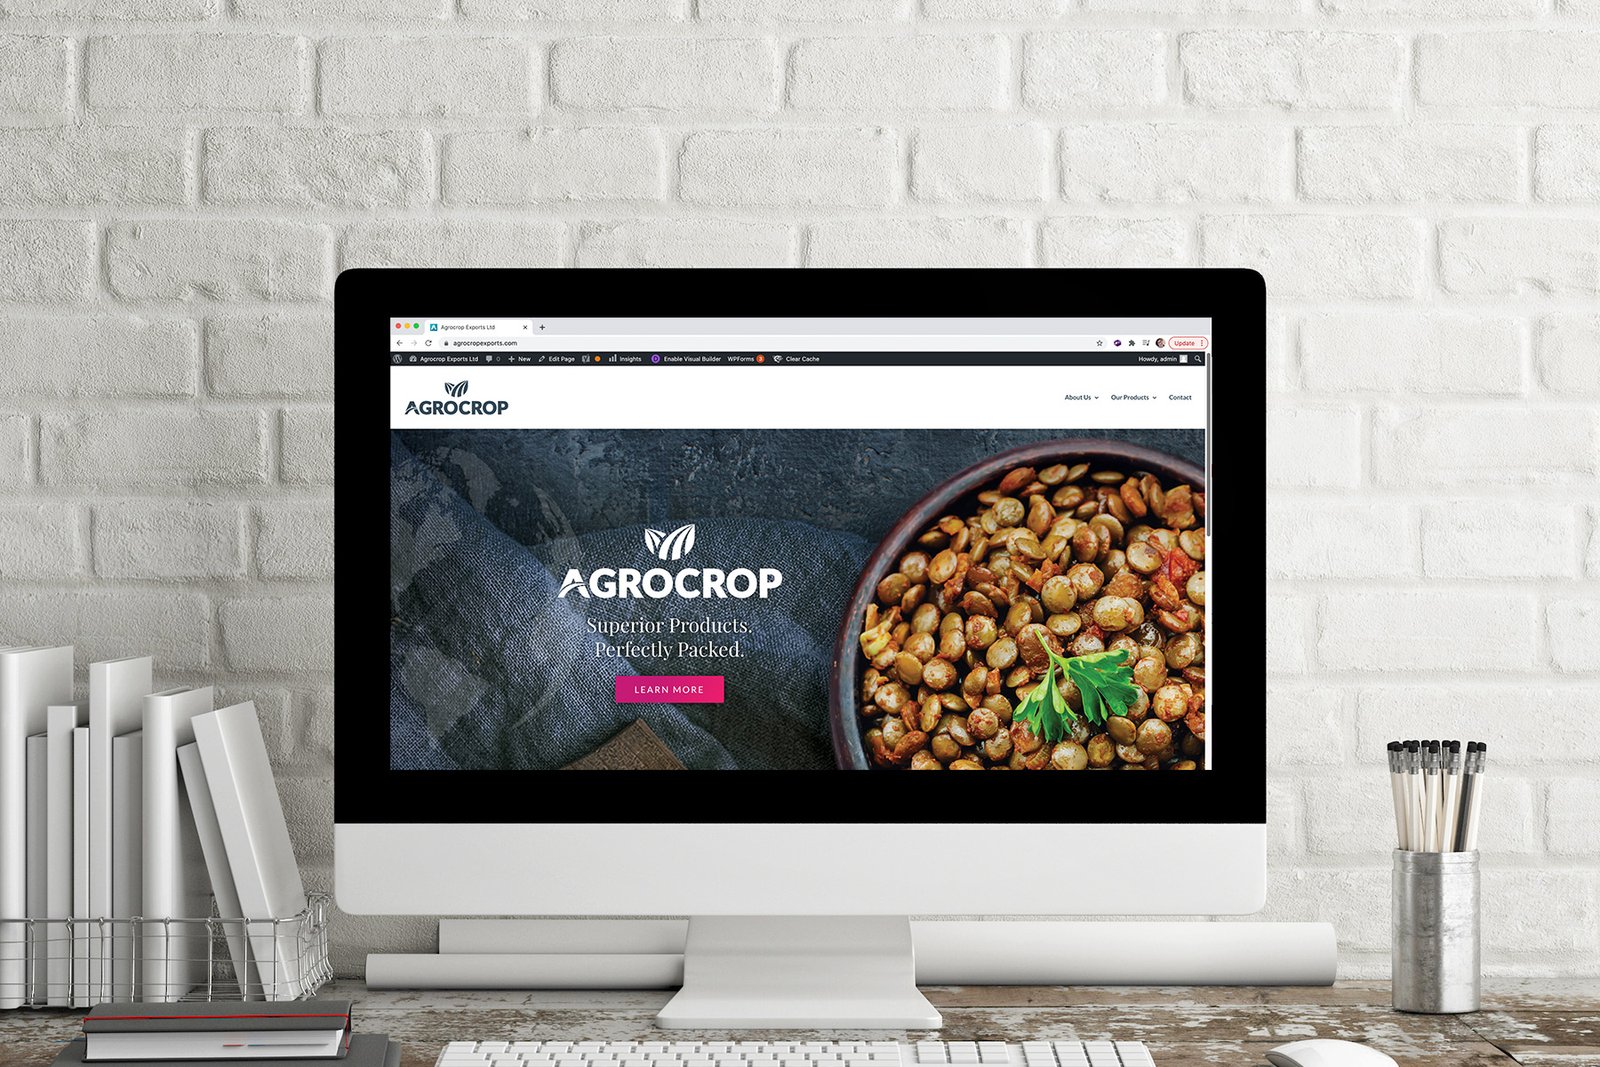 agrocrop websites, agrocrop exports, webside design